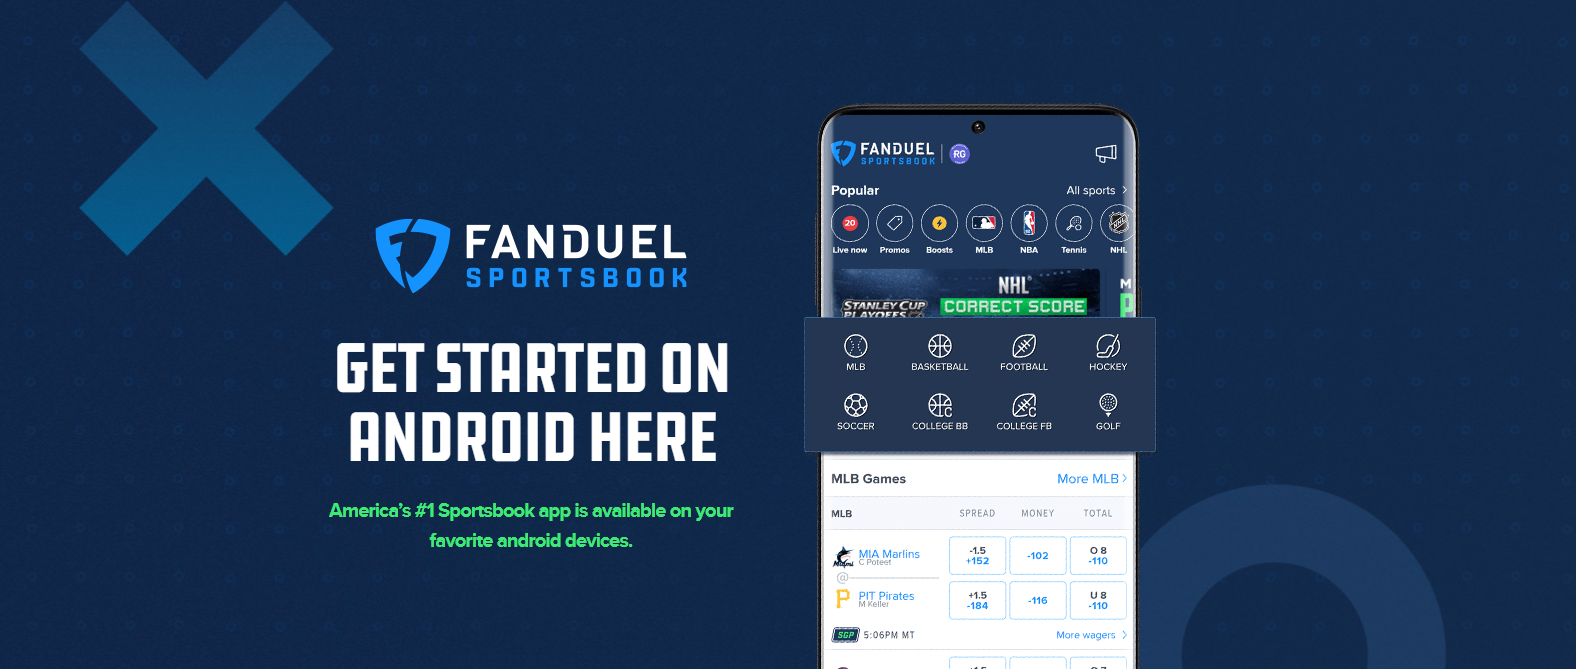 fanduel mobile app